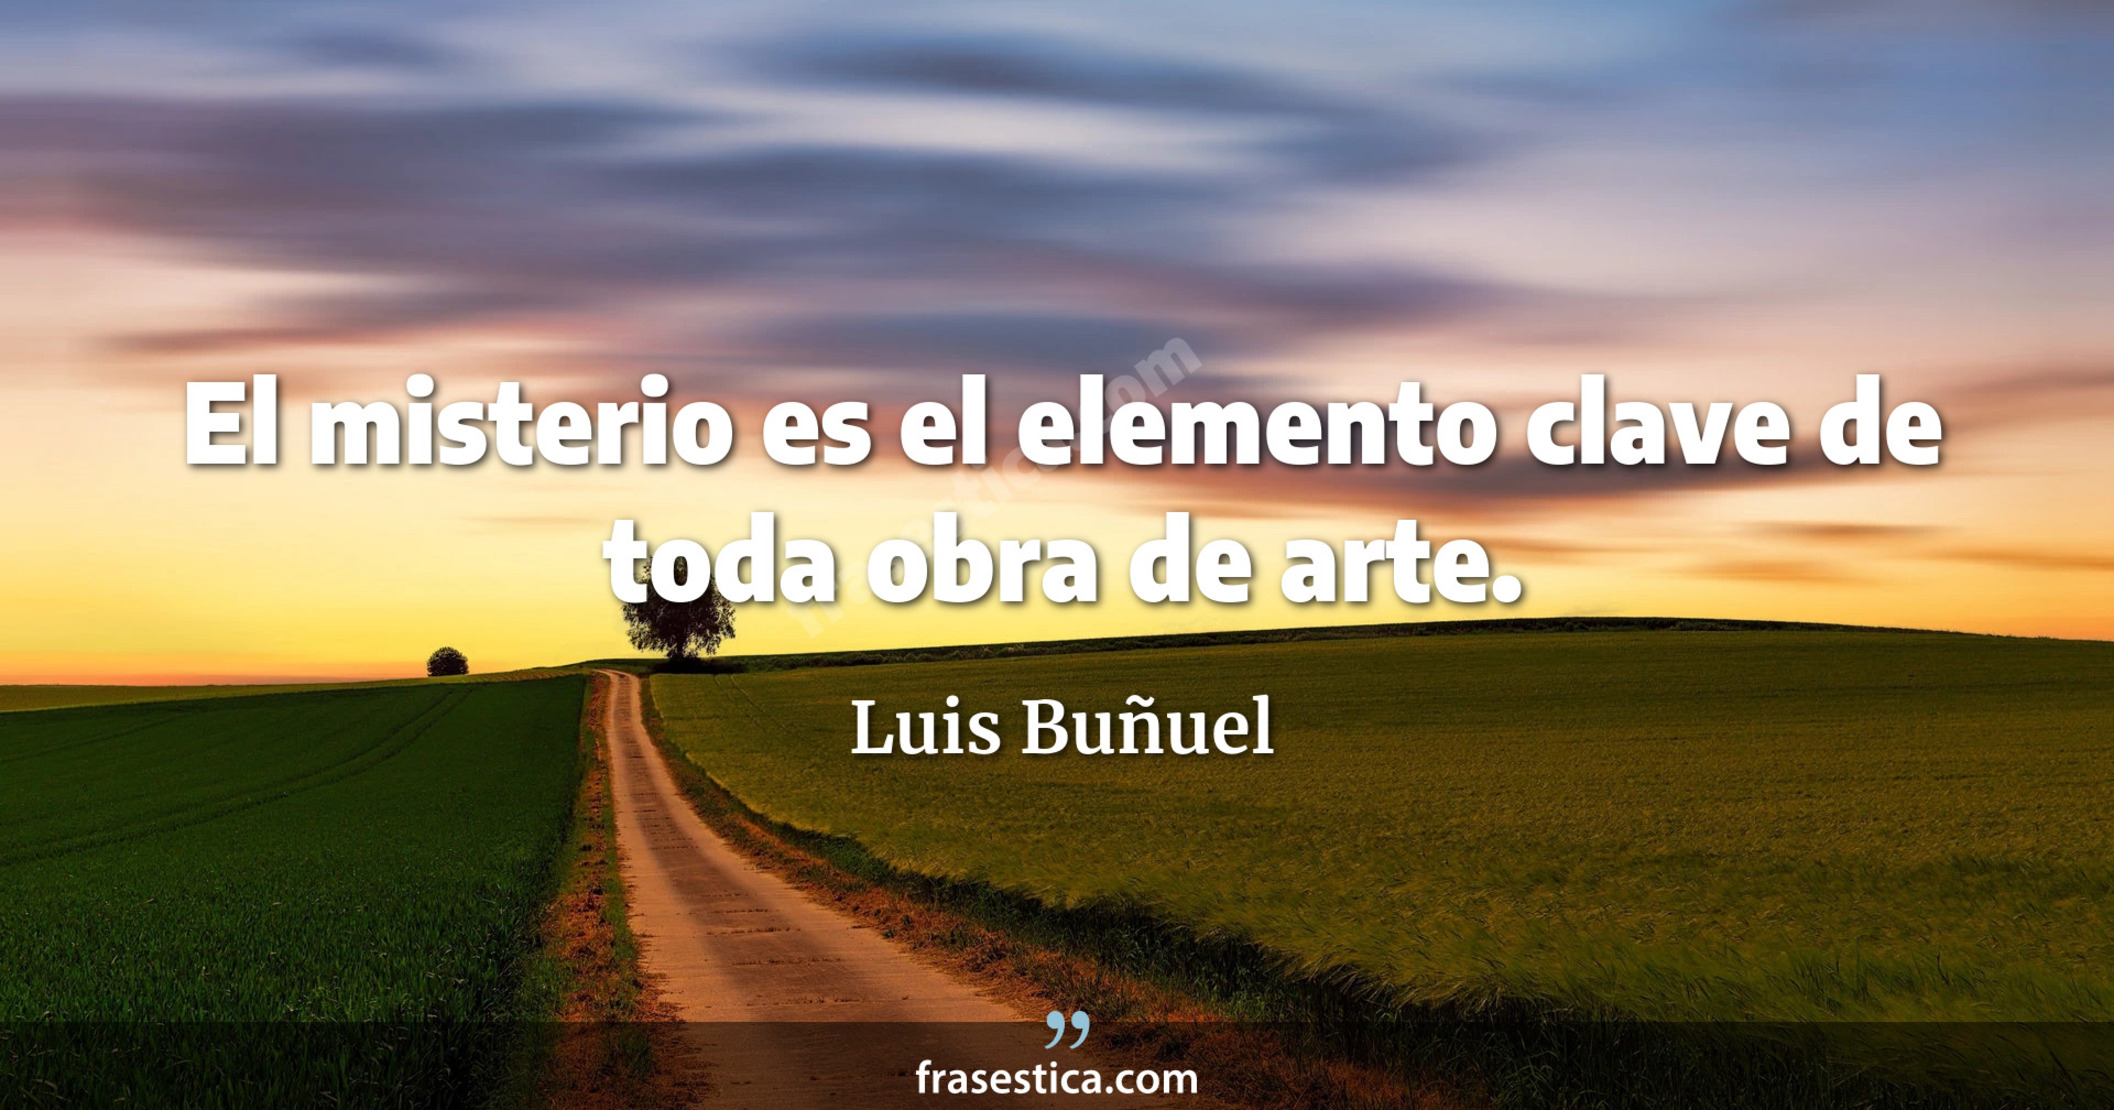 El misterio es el elemento clave de toda obra de arte. - Luis Buñuel